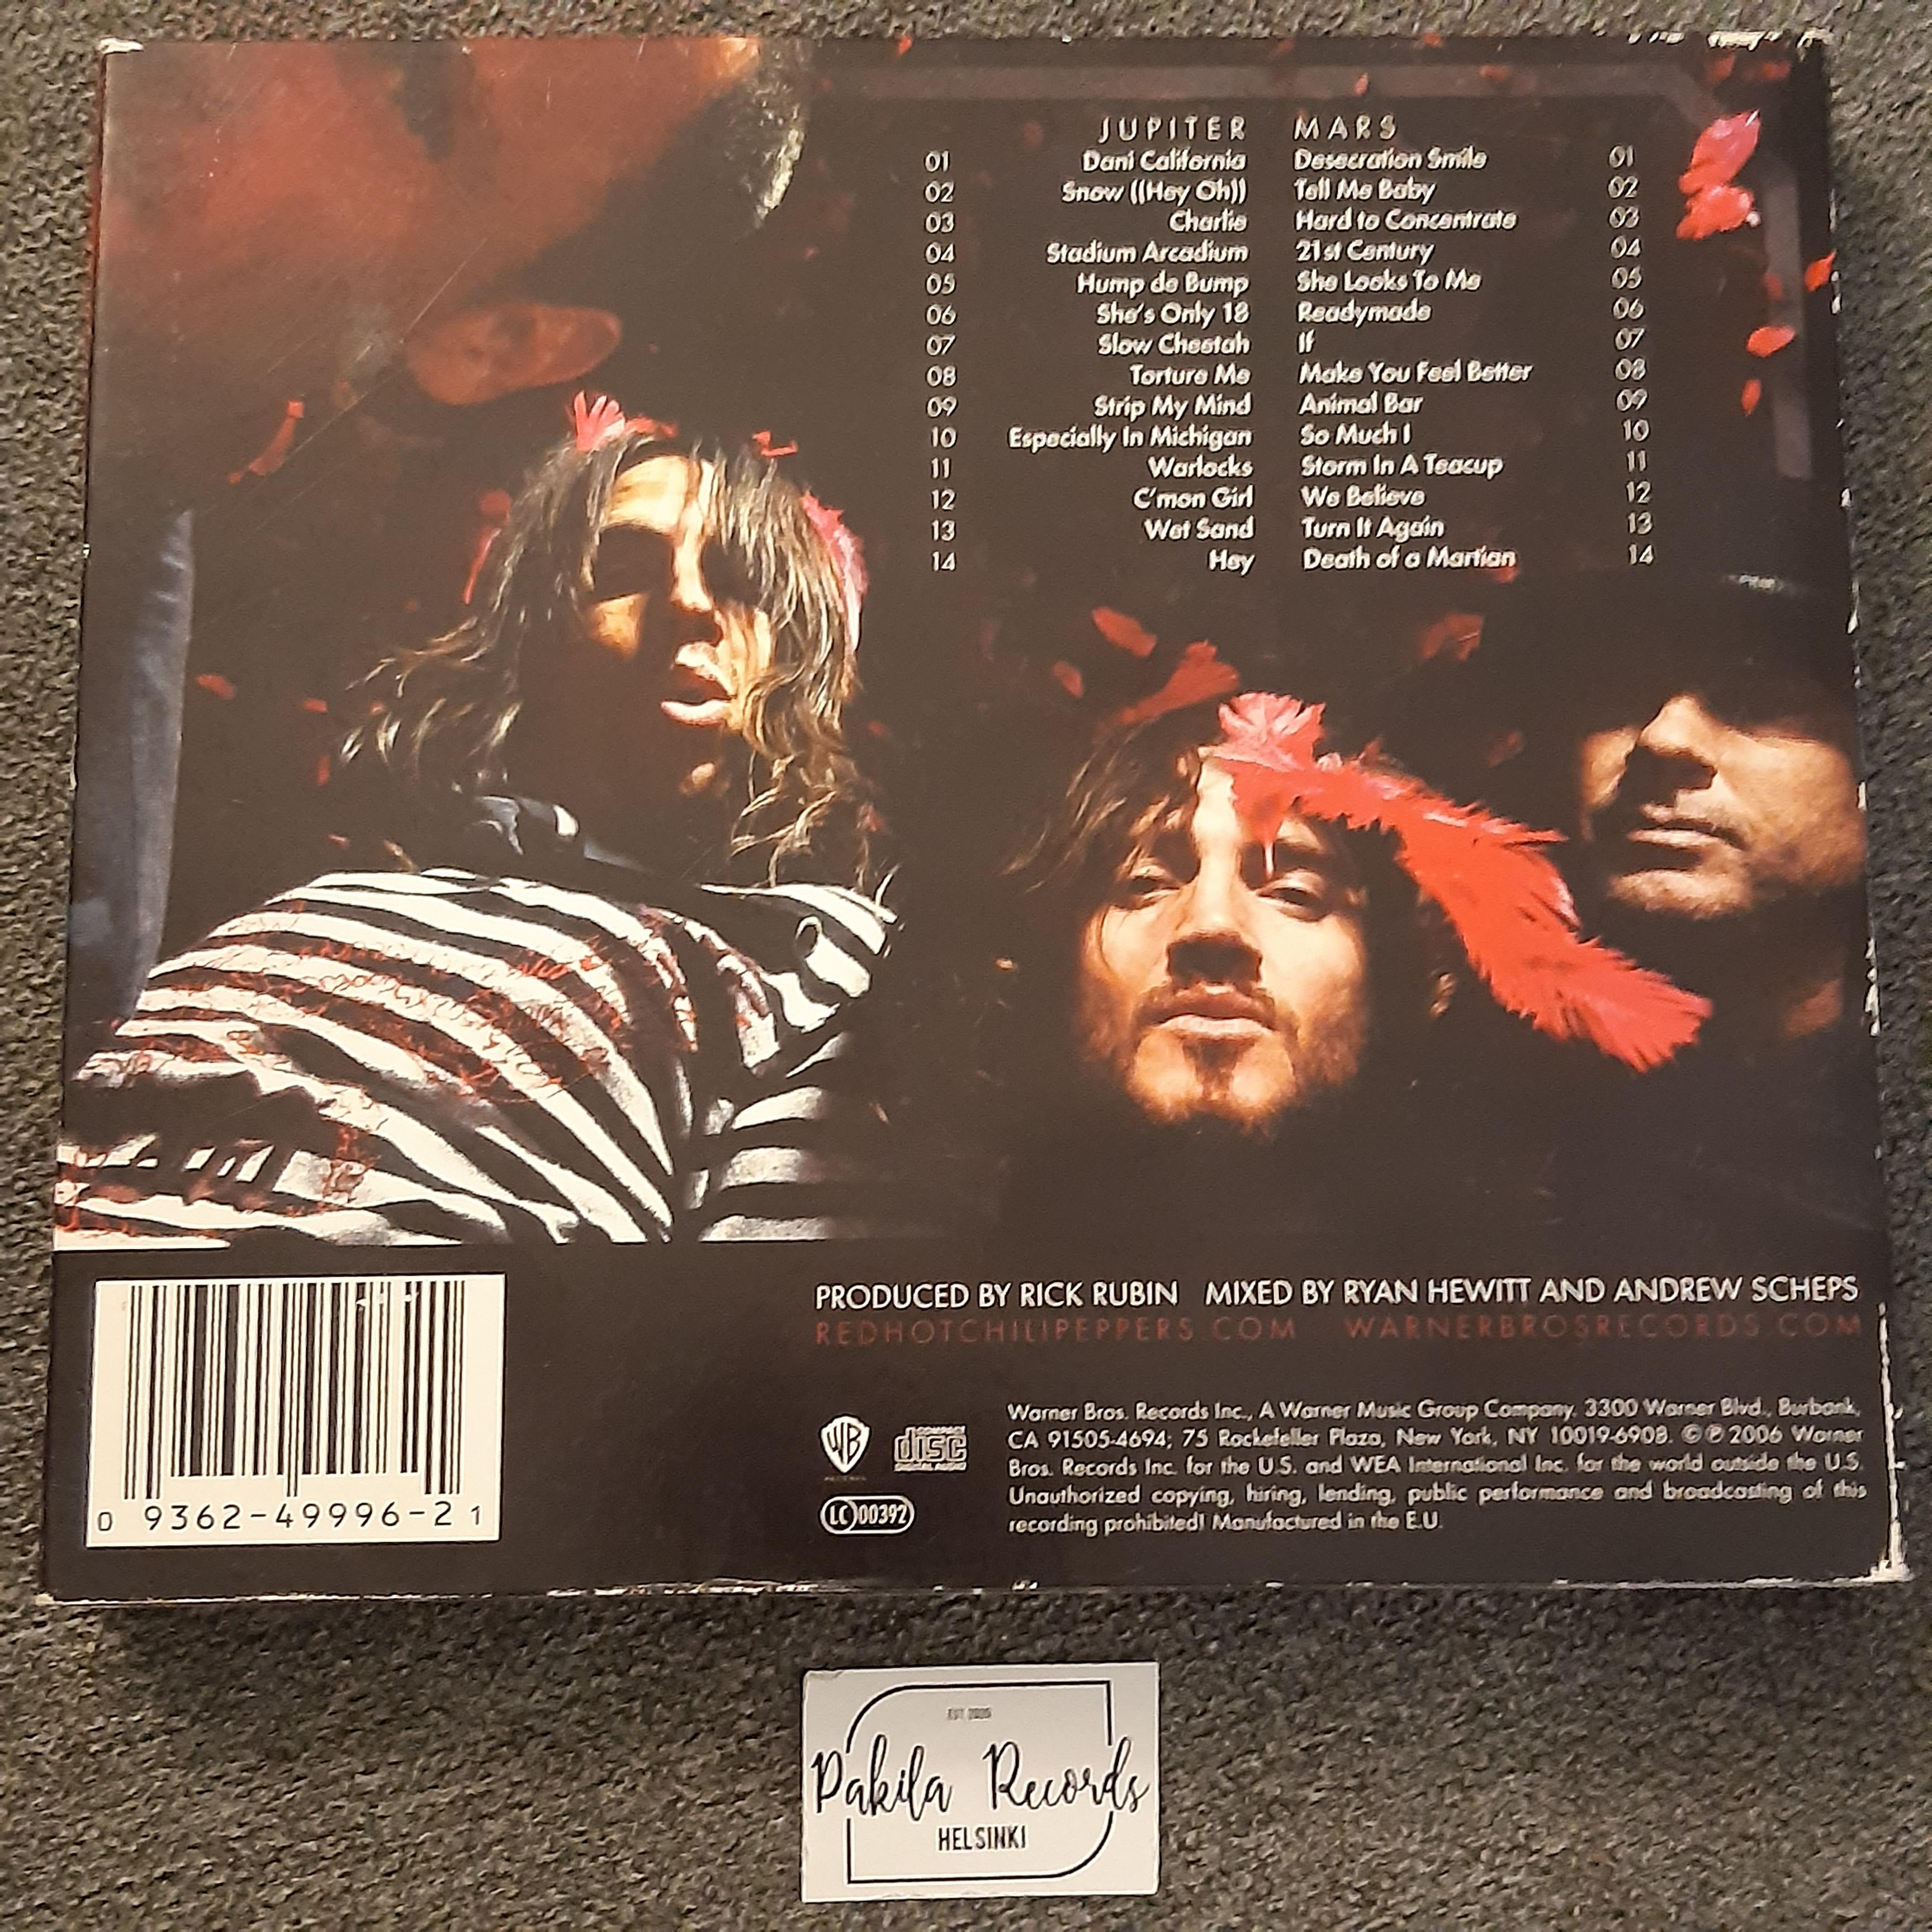 Red Hot Chili Peppers - Stadium Arcadium - 2 CD (käytetty)